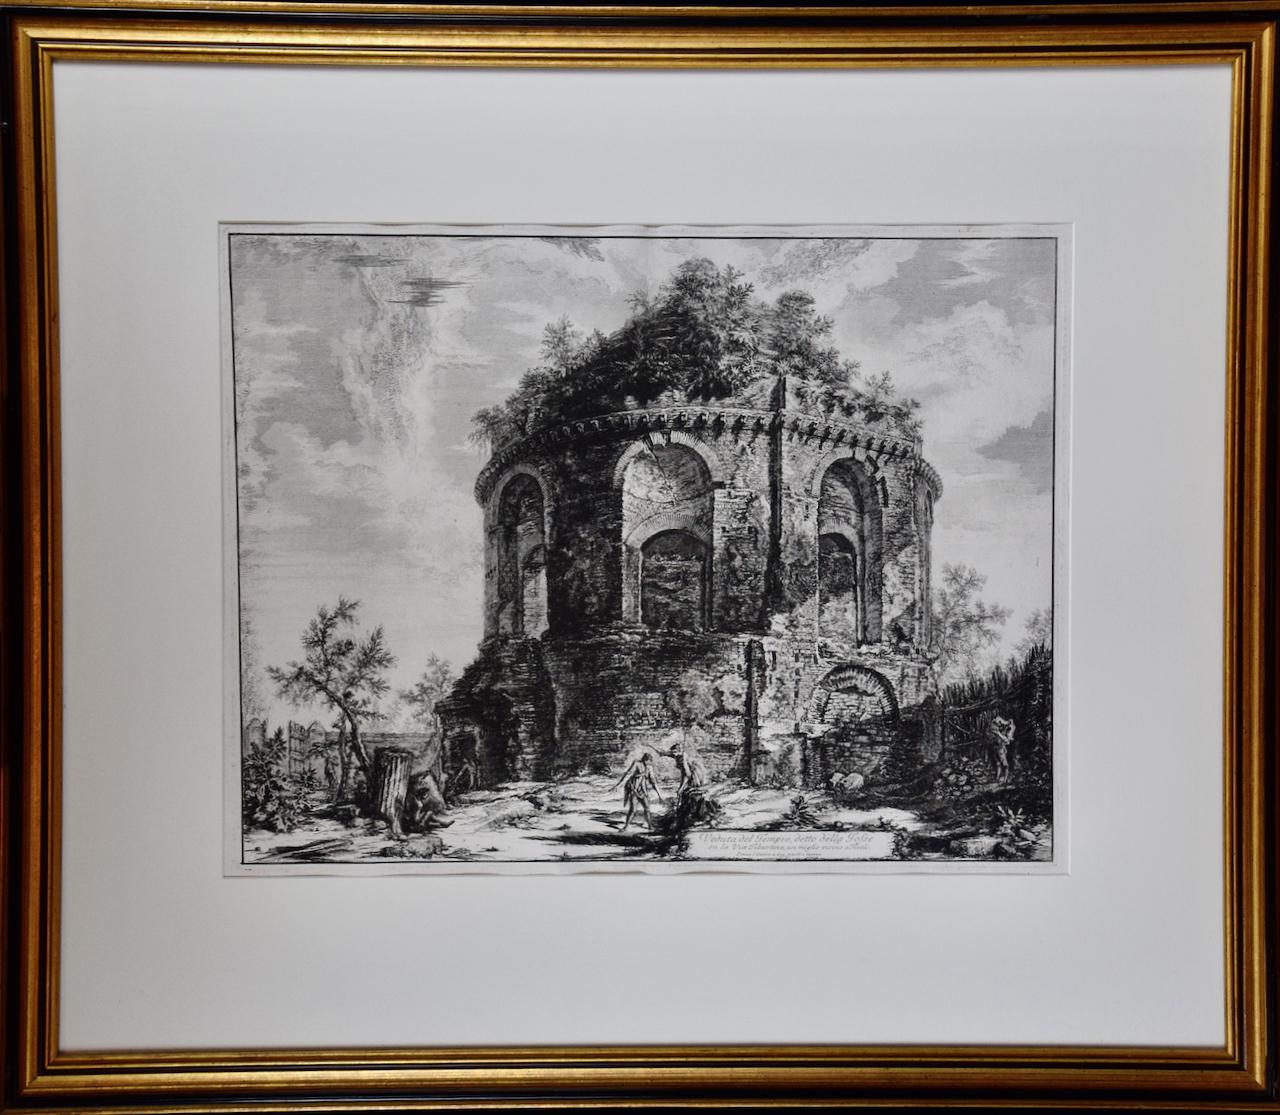 Landscape Print Giovanni Battista Piranesi - Architecture de temple romain antique : une gravure encadrée du 18e siècle réalisée par Piranesi